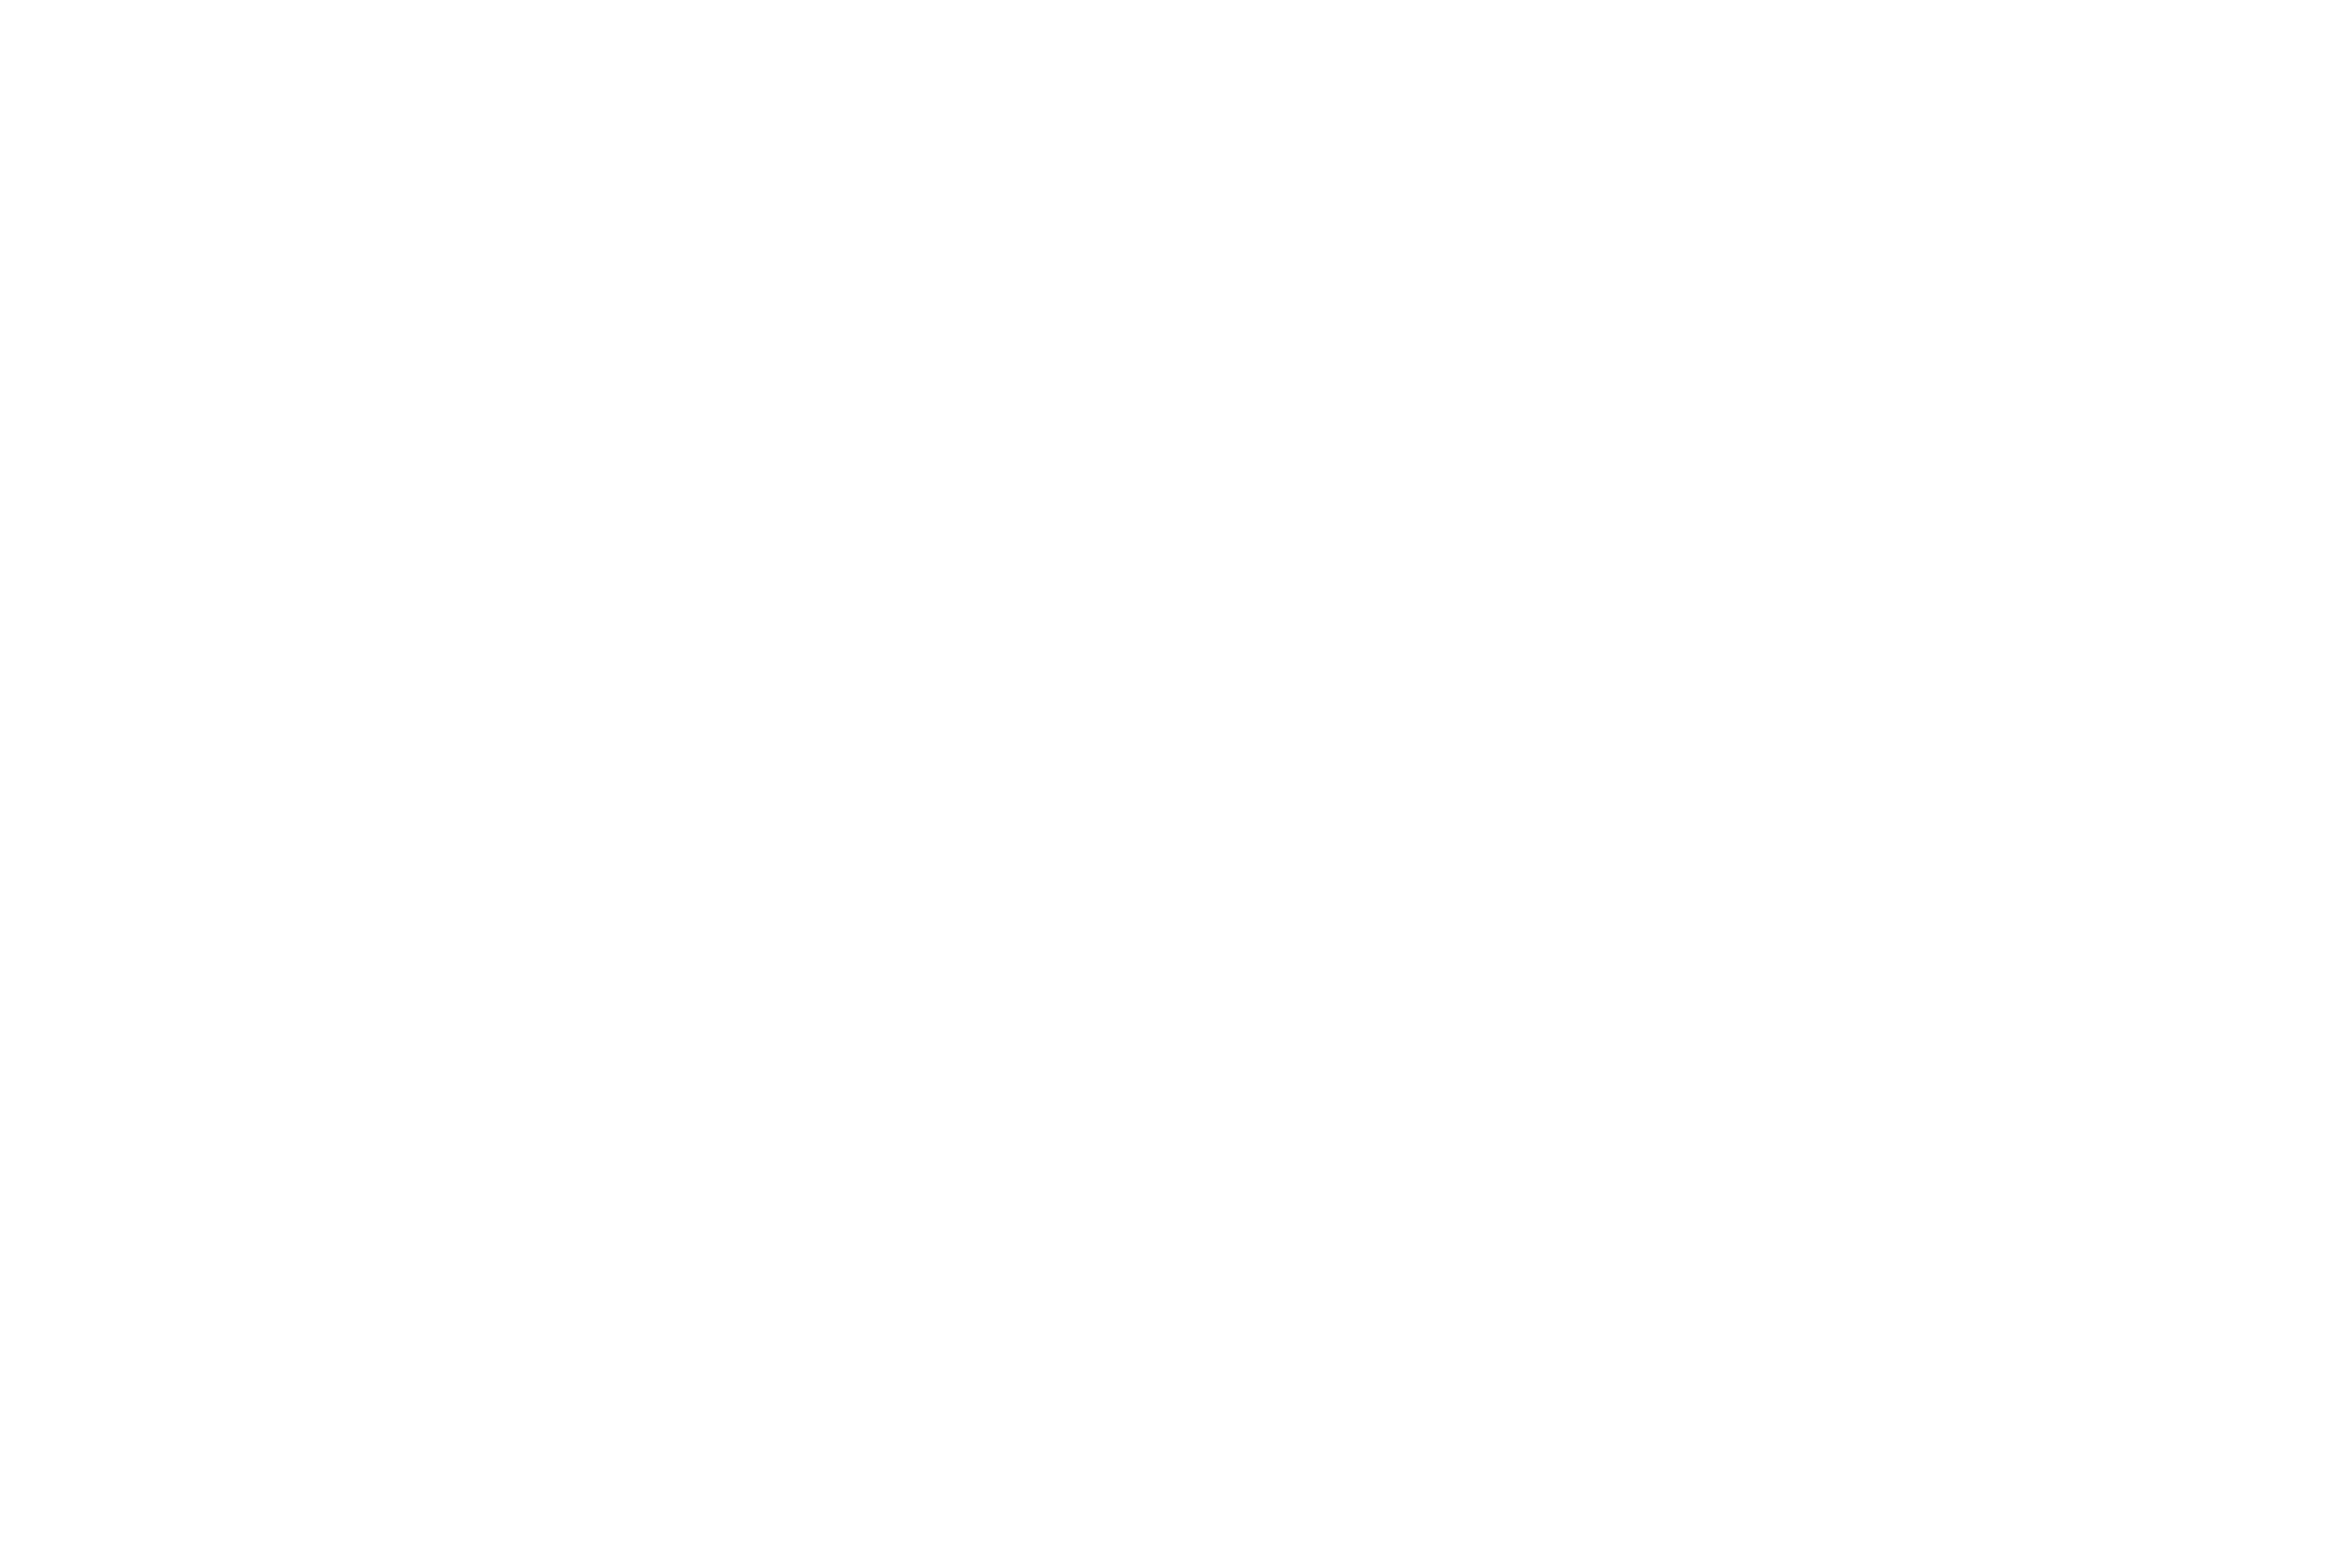 Izzy Cooper